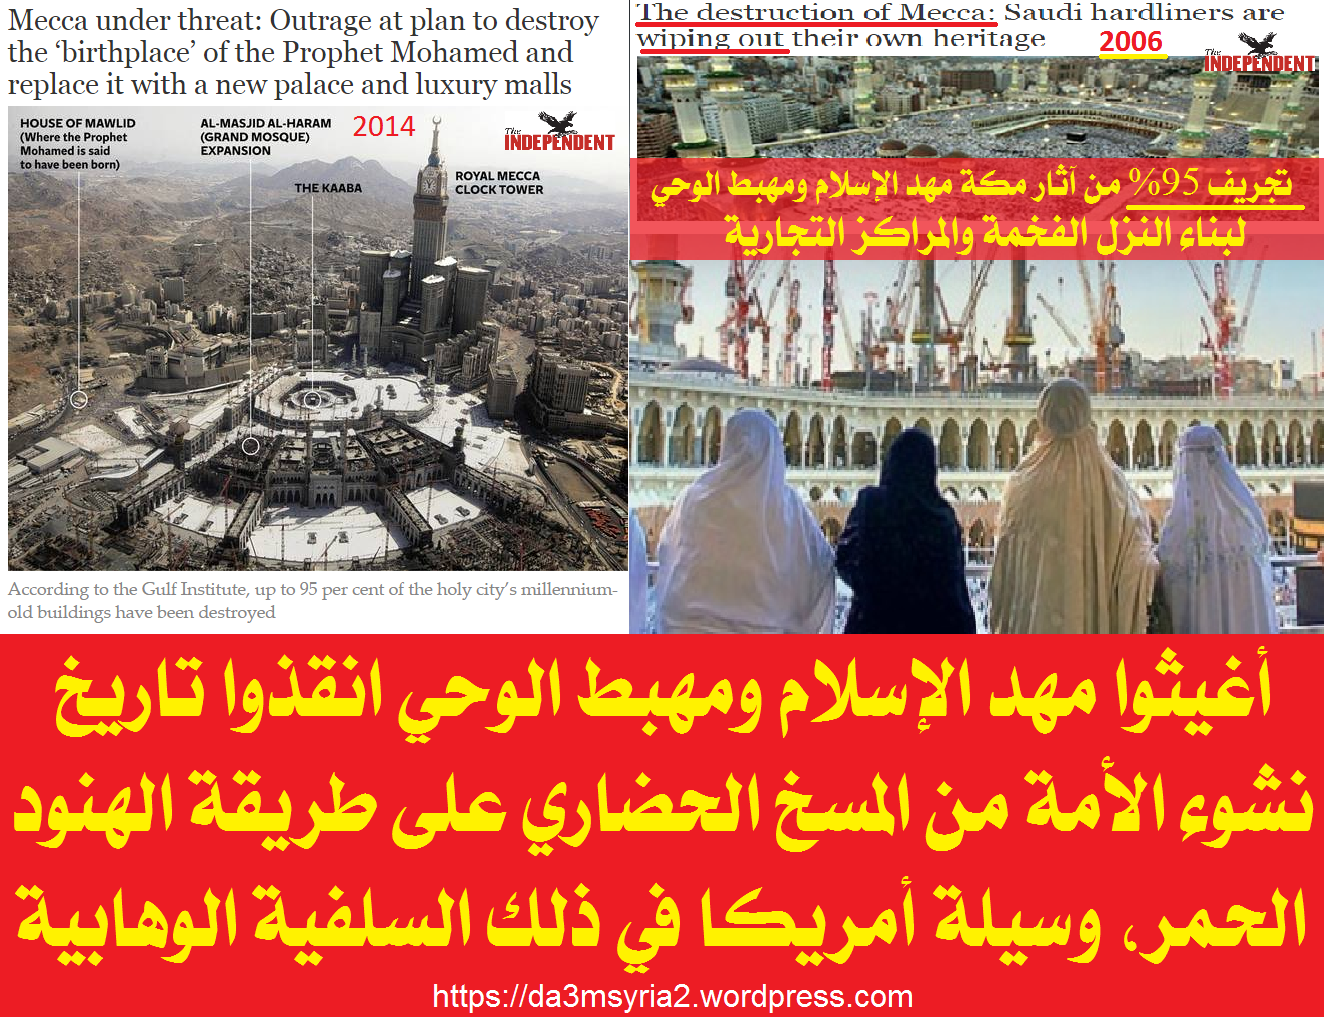 Projet musulman raisonnable de détruire la Mecque Mecca11